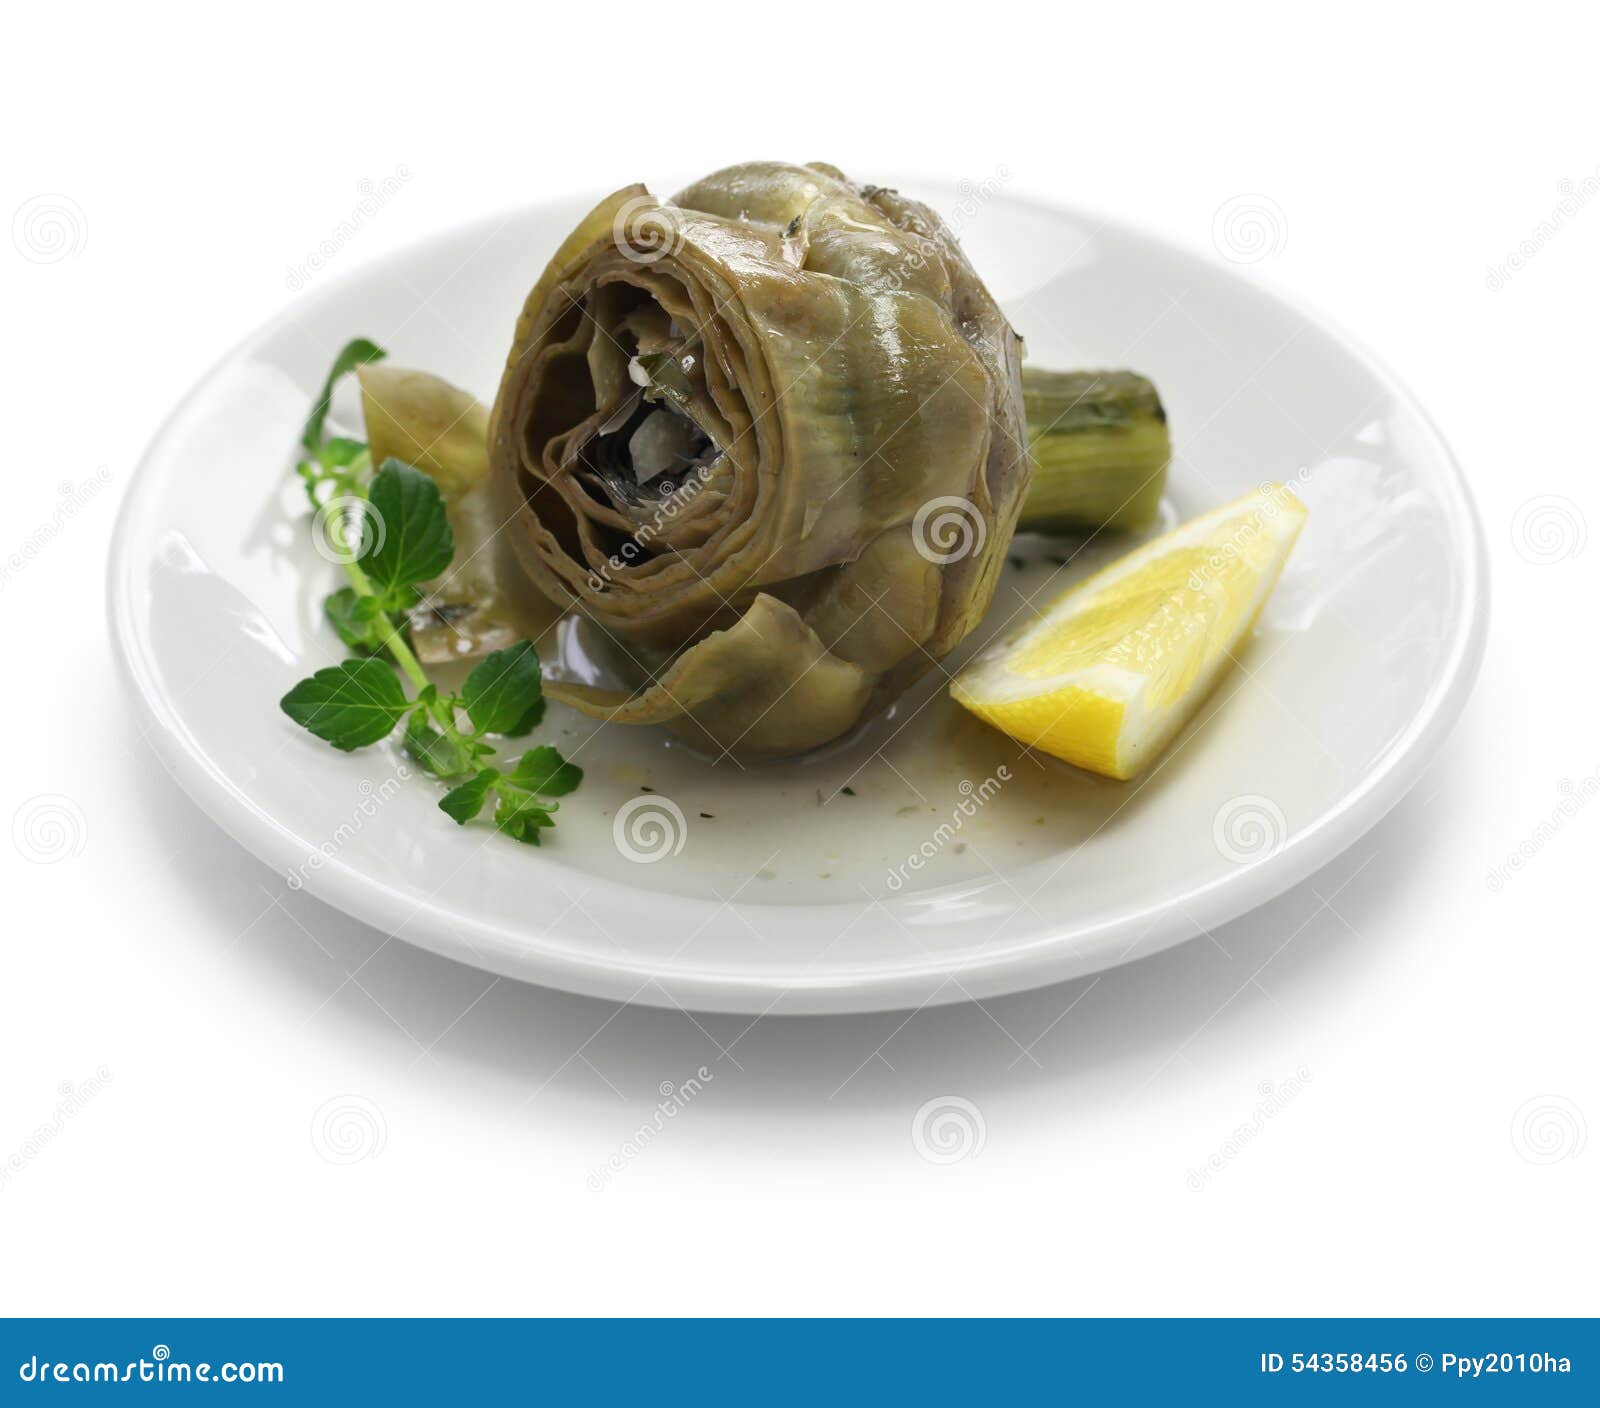 carciofi alla romana, roman style boiled artichoke